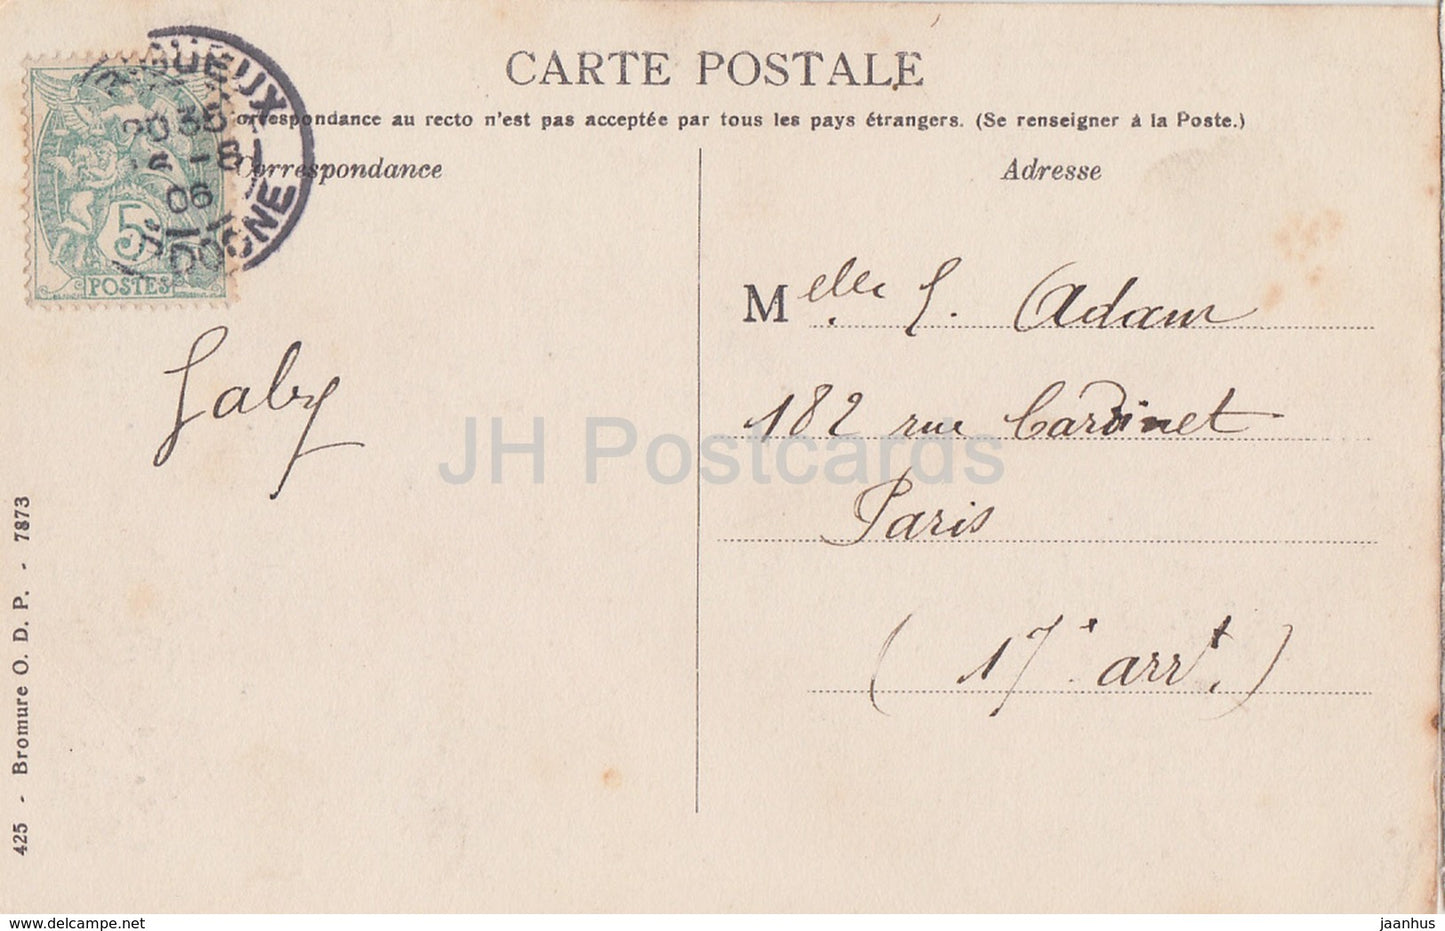 Perigueux - Basilique Saint Front - Kathedrale - alte Postkarte - 1906 - Frankreich - gebraucht